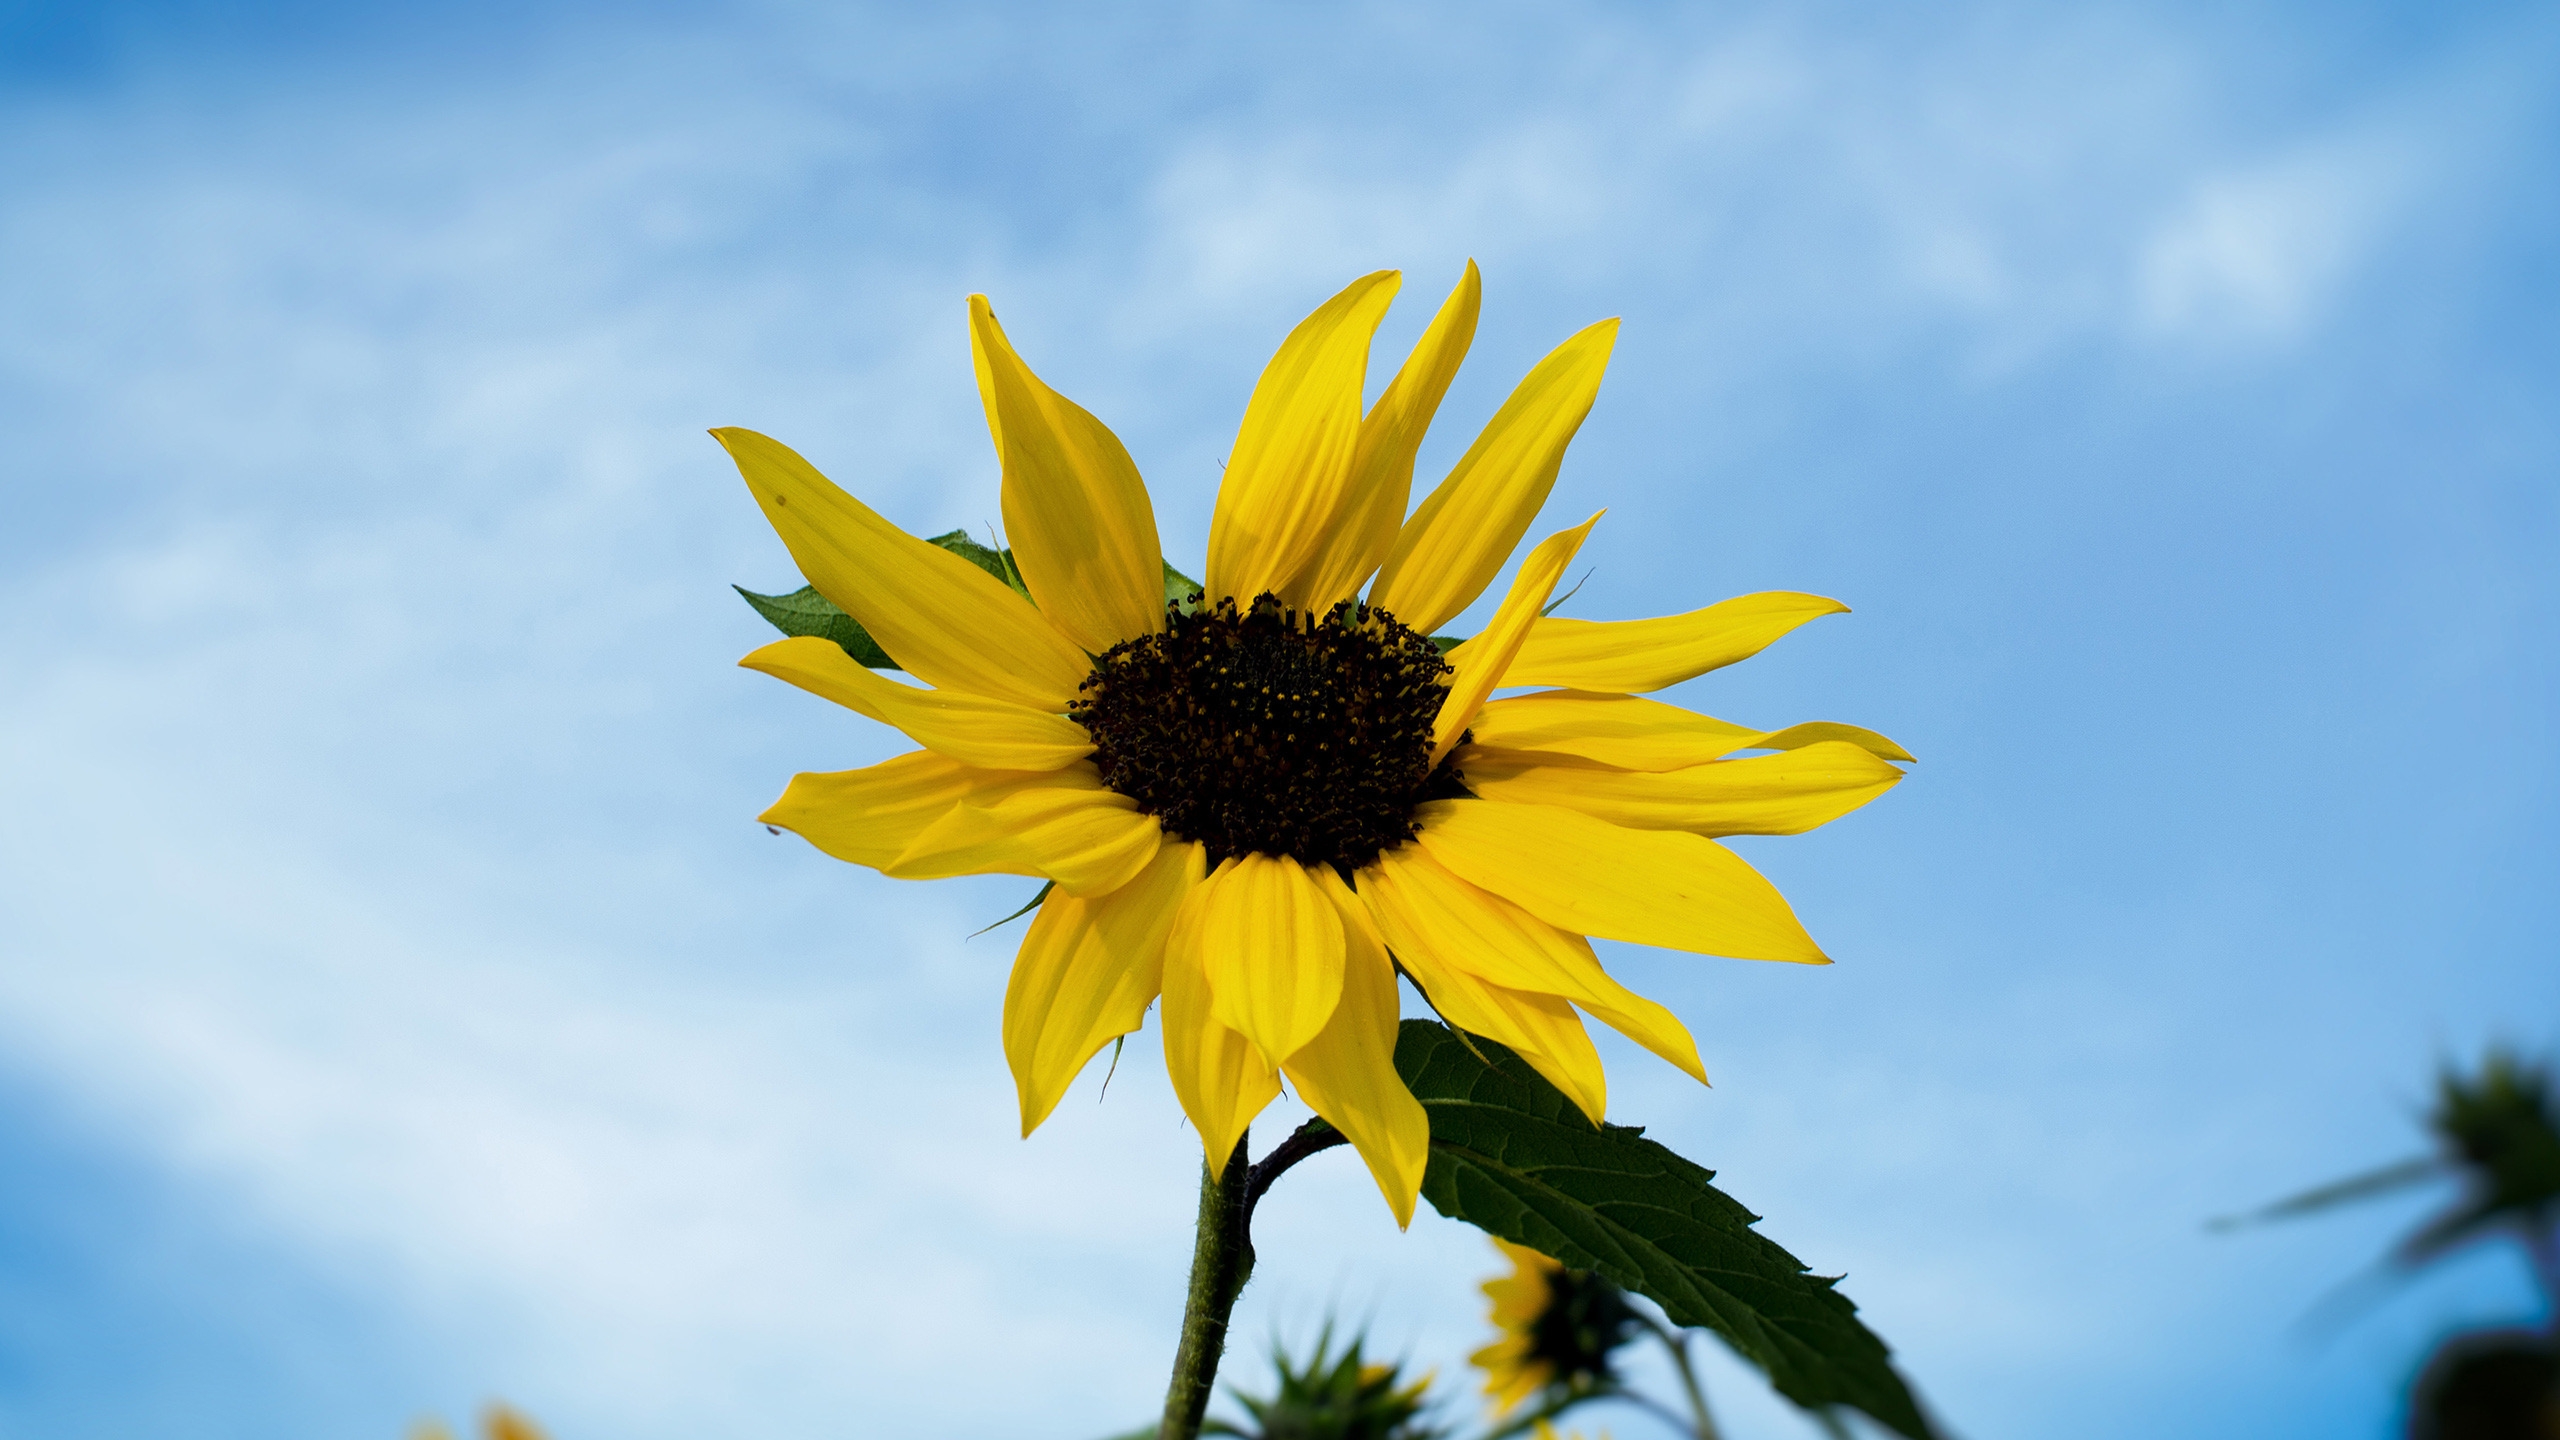 Single Sunflower for 2560x1440 HDTV resolution